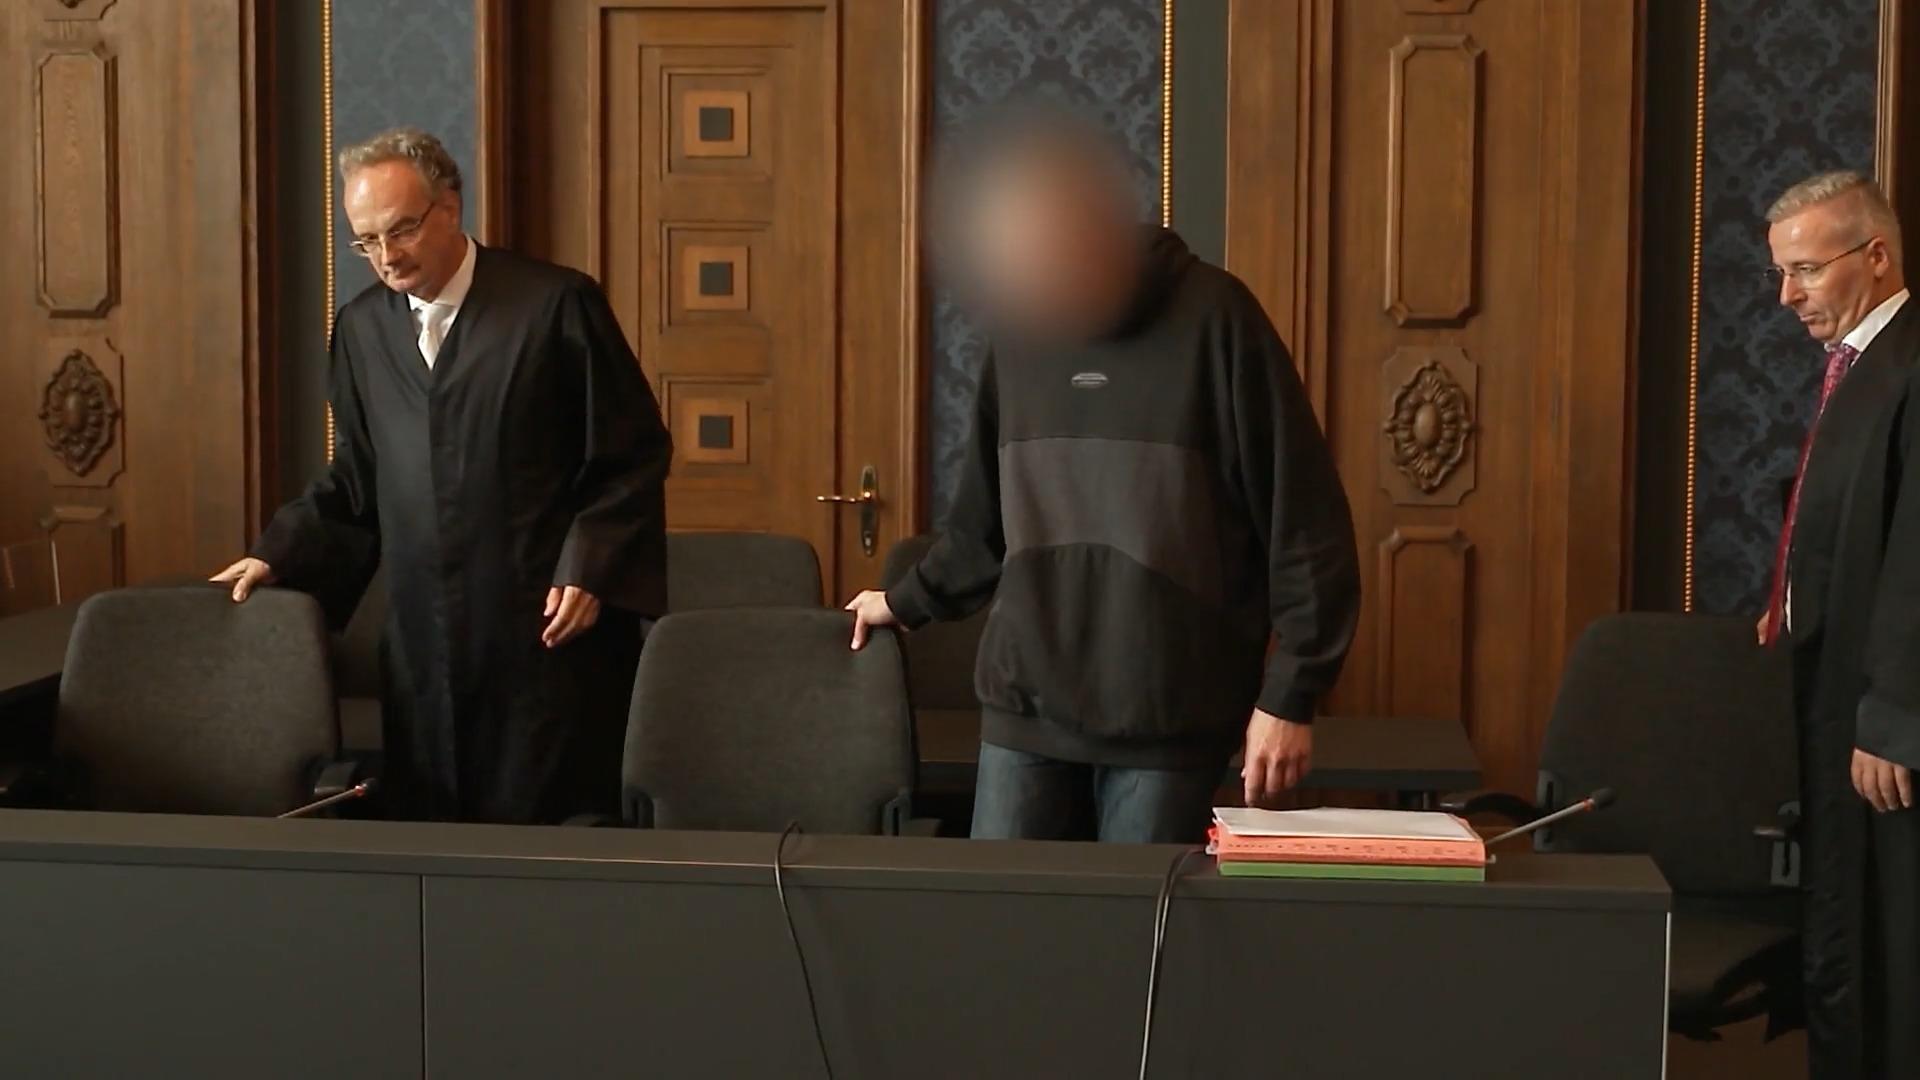 Sohn erstickt - Gericht fällt Urteil gegen Vater Klaas S. muss lebenslang ins Haft